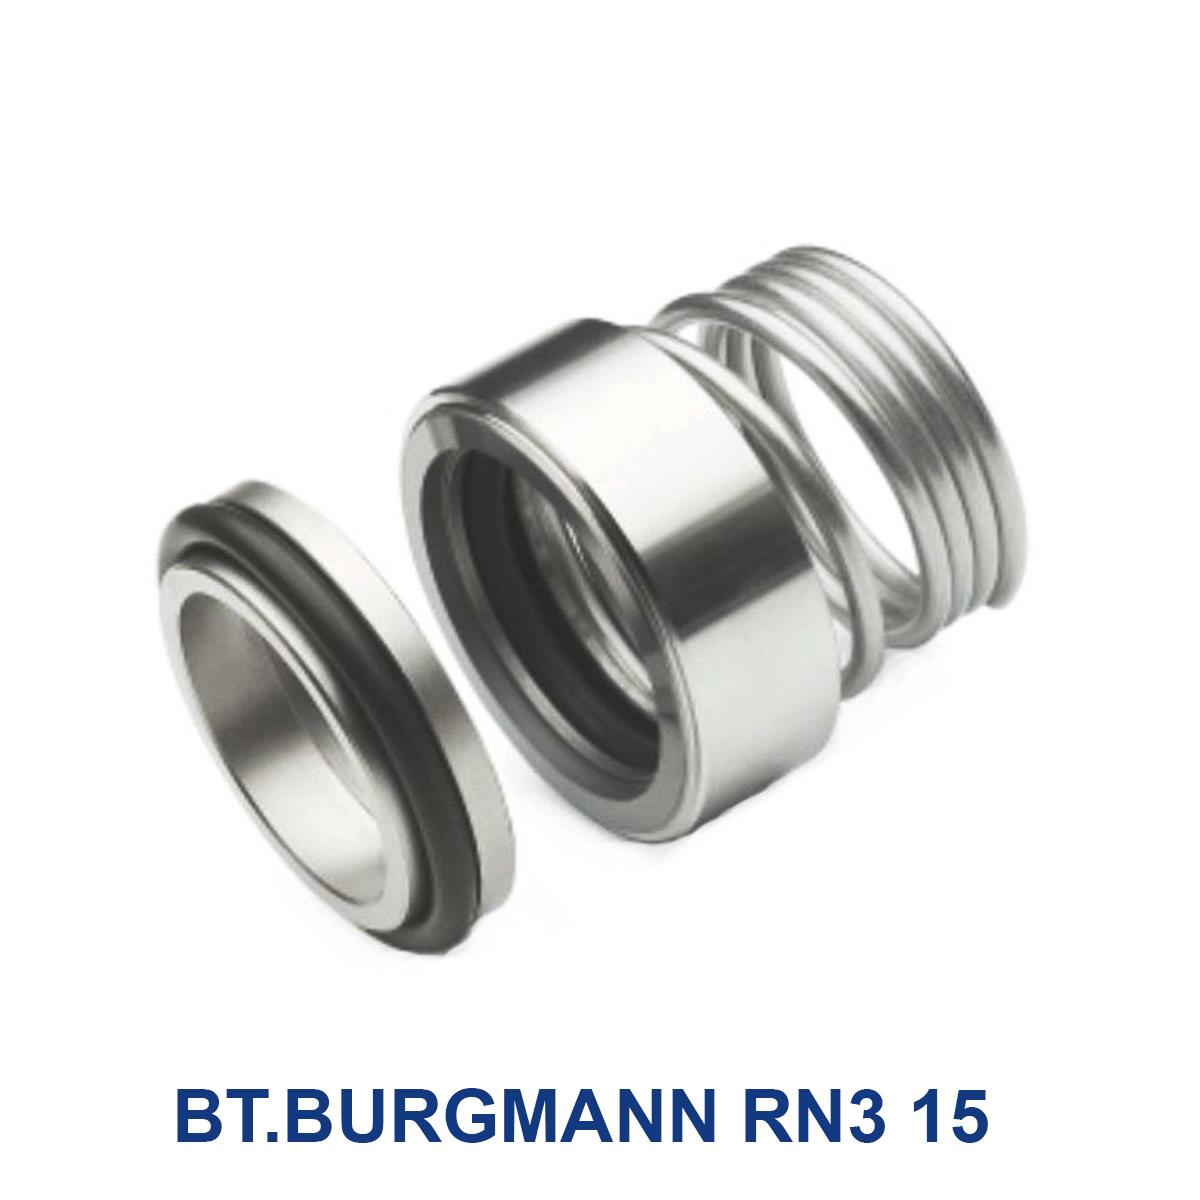 BT.BURGMANN-RN3-15